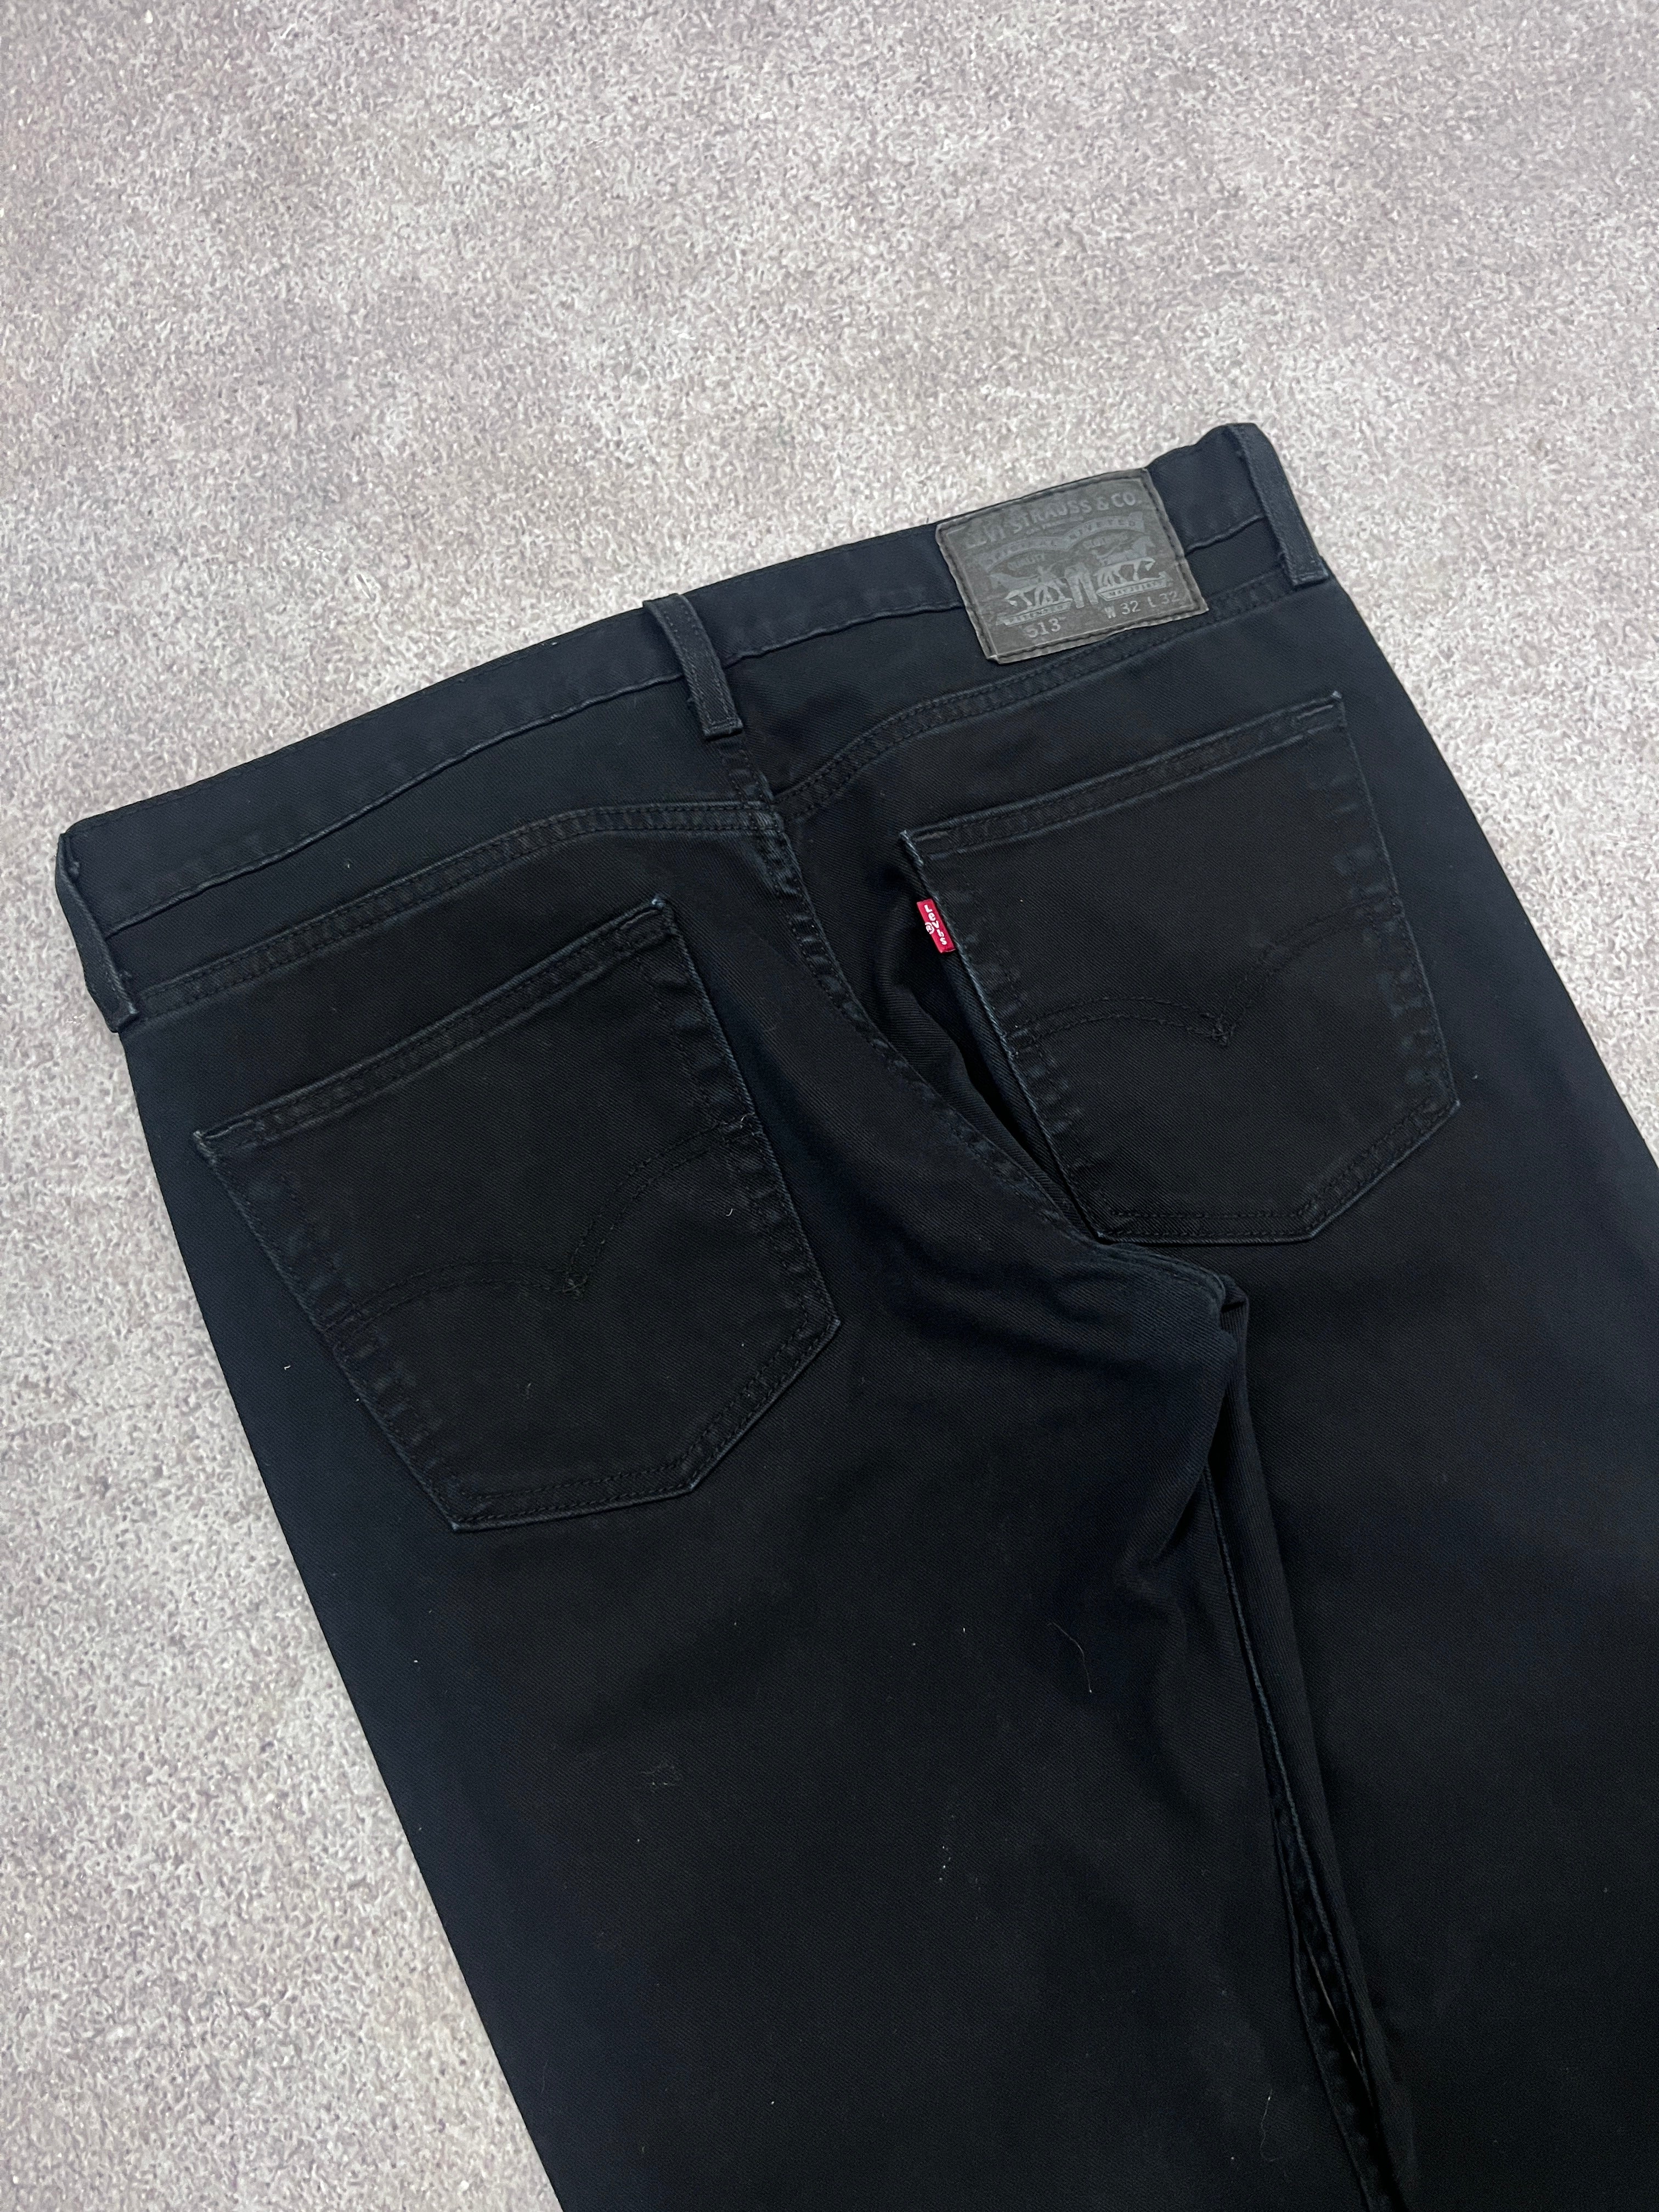 Vintage Levi 513 Denim Jeans Black // W32 L32 - RHAGHOUSE VINTAGE